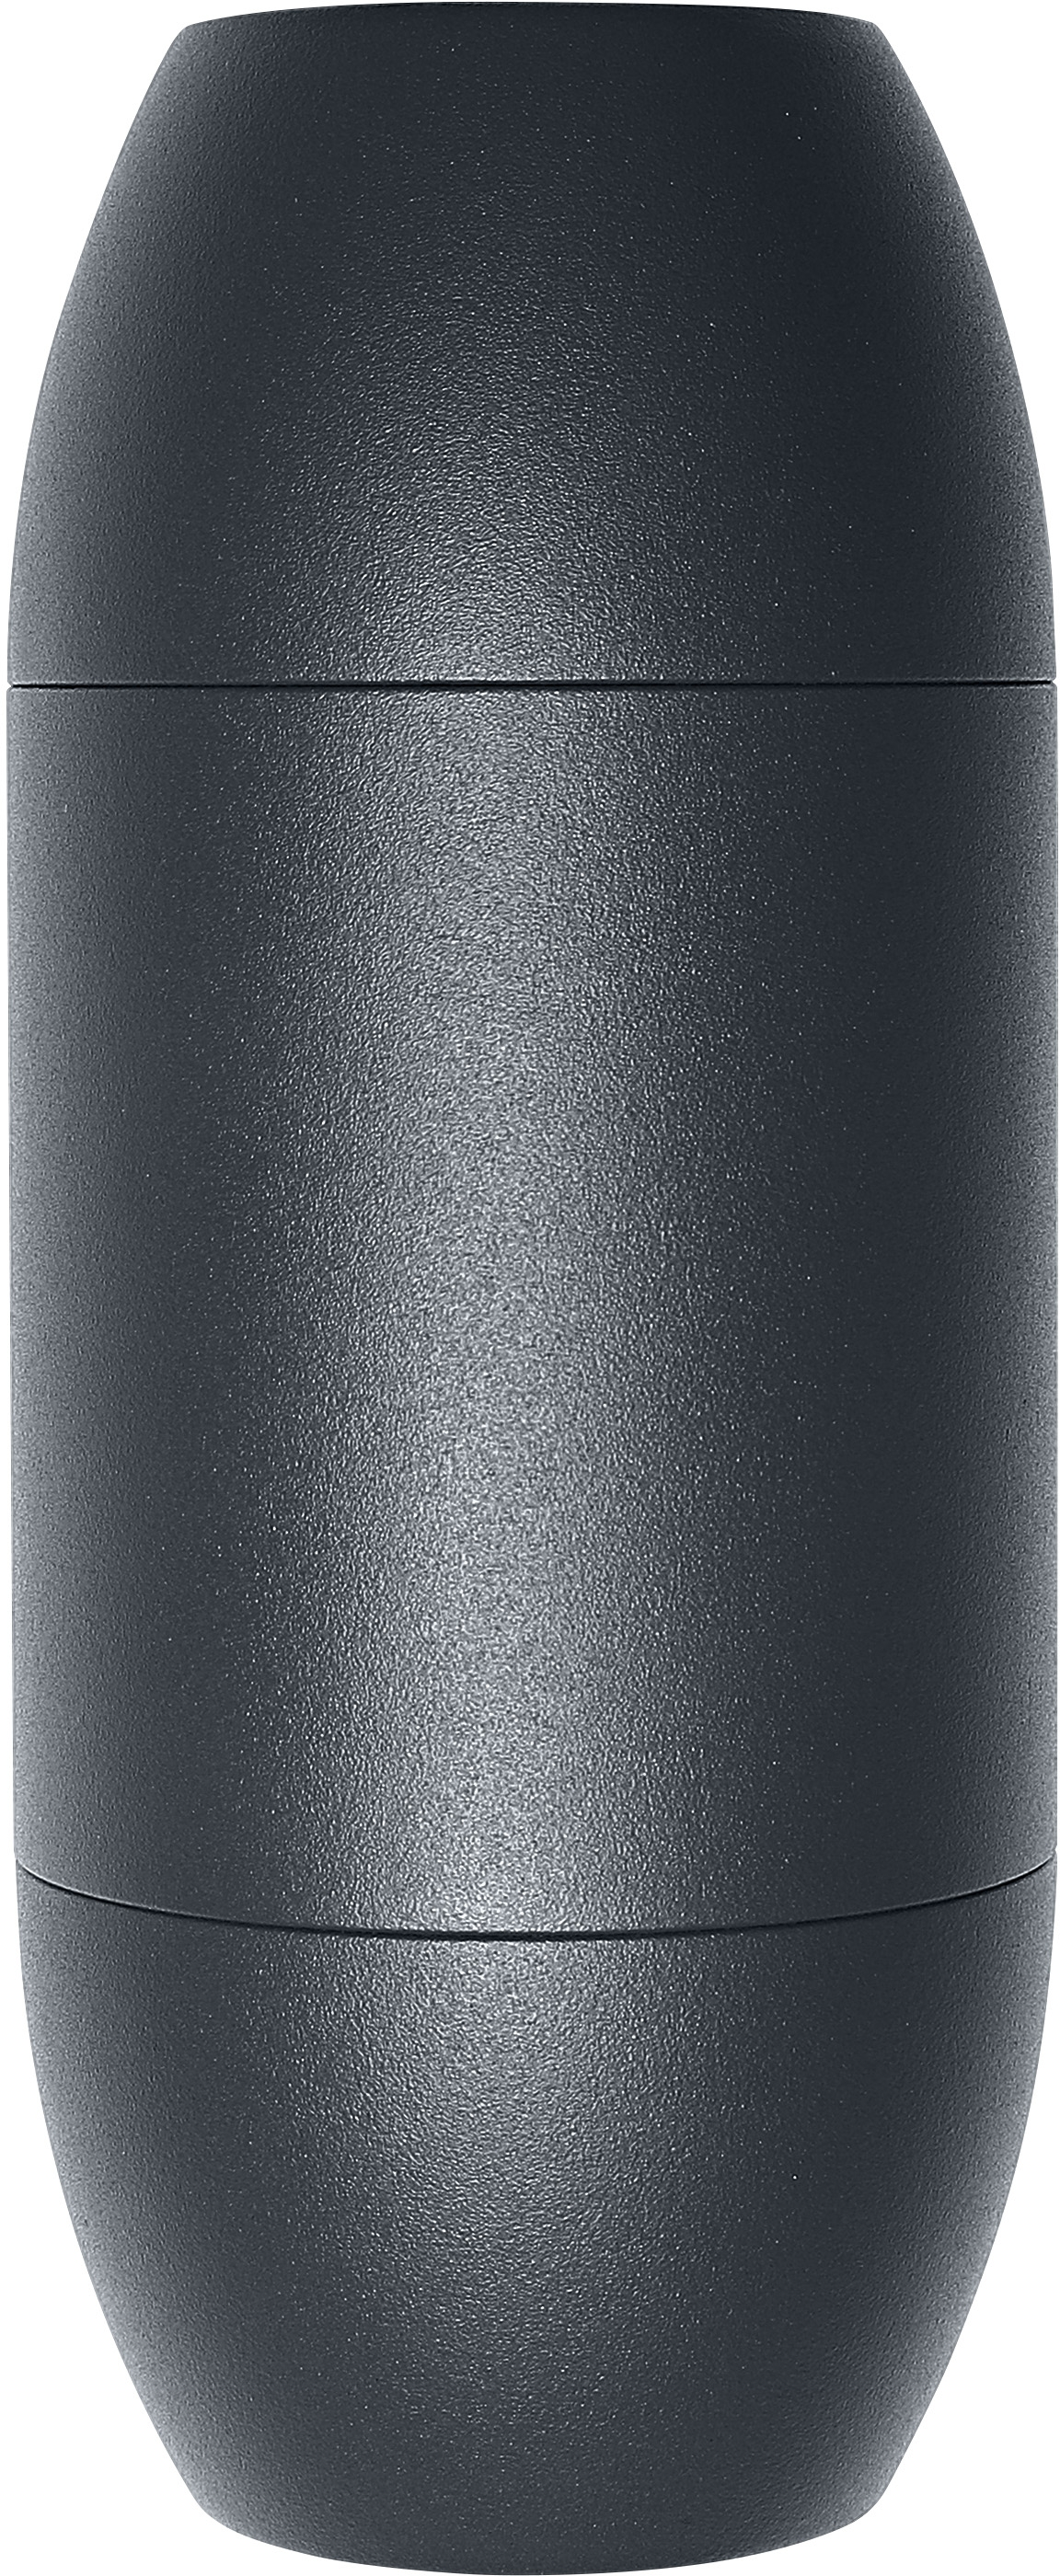 Светильник Ledvance GU10 фасадный IP44 Endura Cannon Wall Updown черный (4058075554498) фото 2